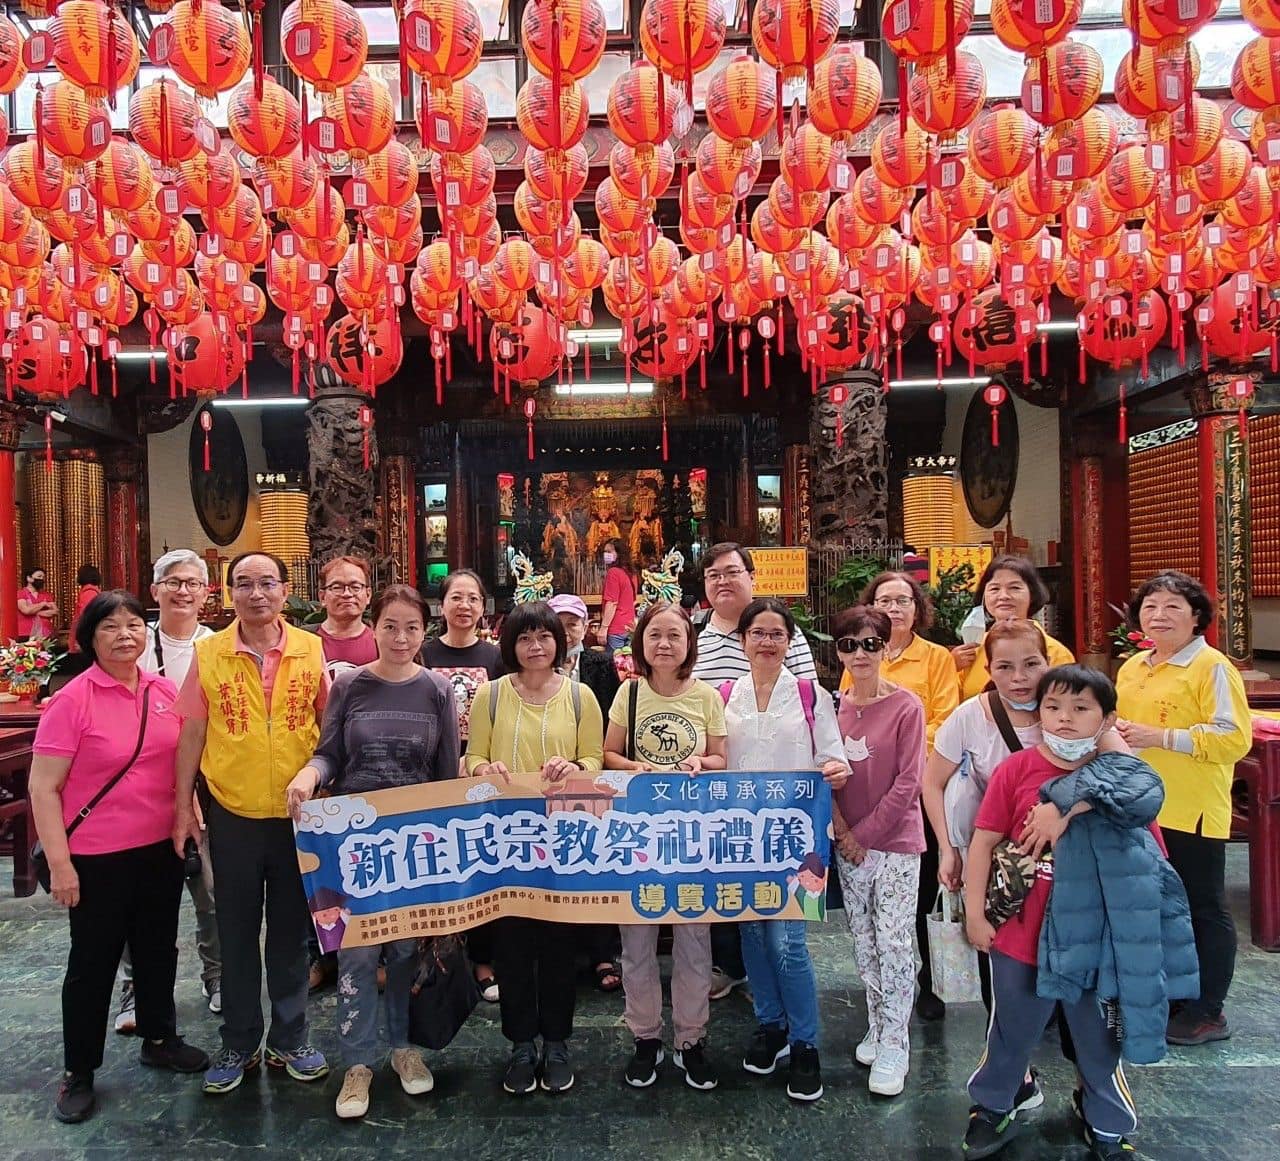 Đào Viên tổ chức hoạt động tìm hiểu văn hóa tôn giáo của Đài Loan dành cho di dân mới. (Nguồn ảnh: Trung tâm Dịch vụ liên hợp dành cho di dân mới của thành phố Đào Viên)